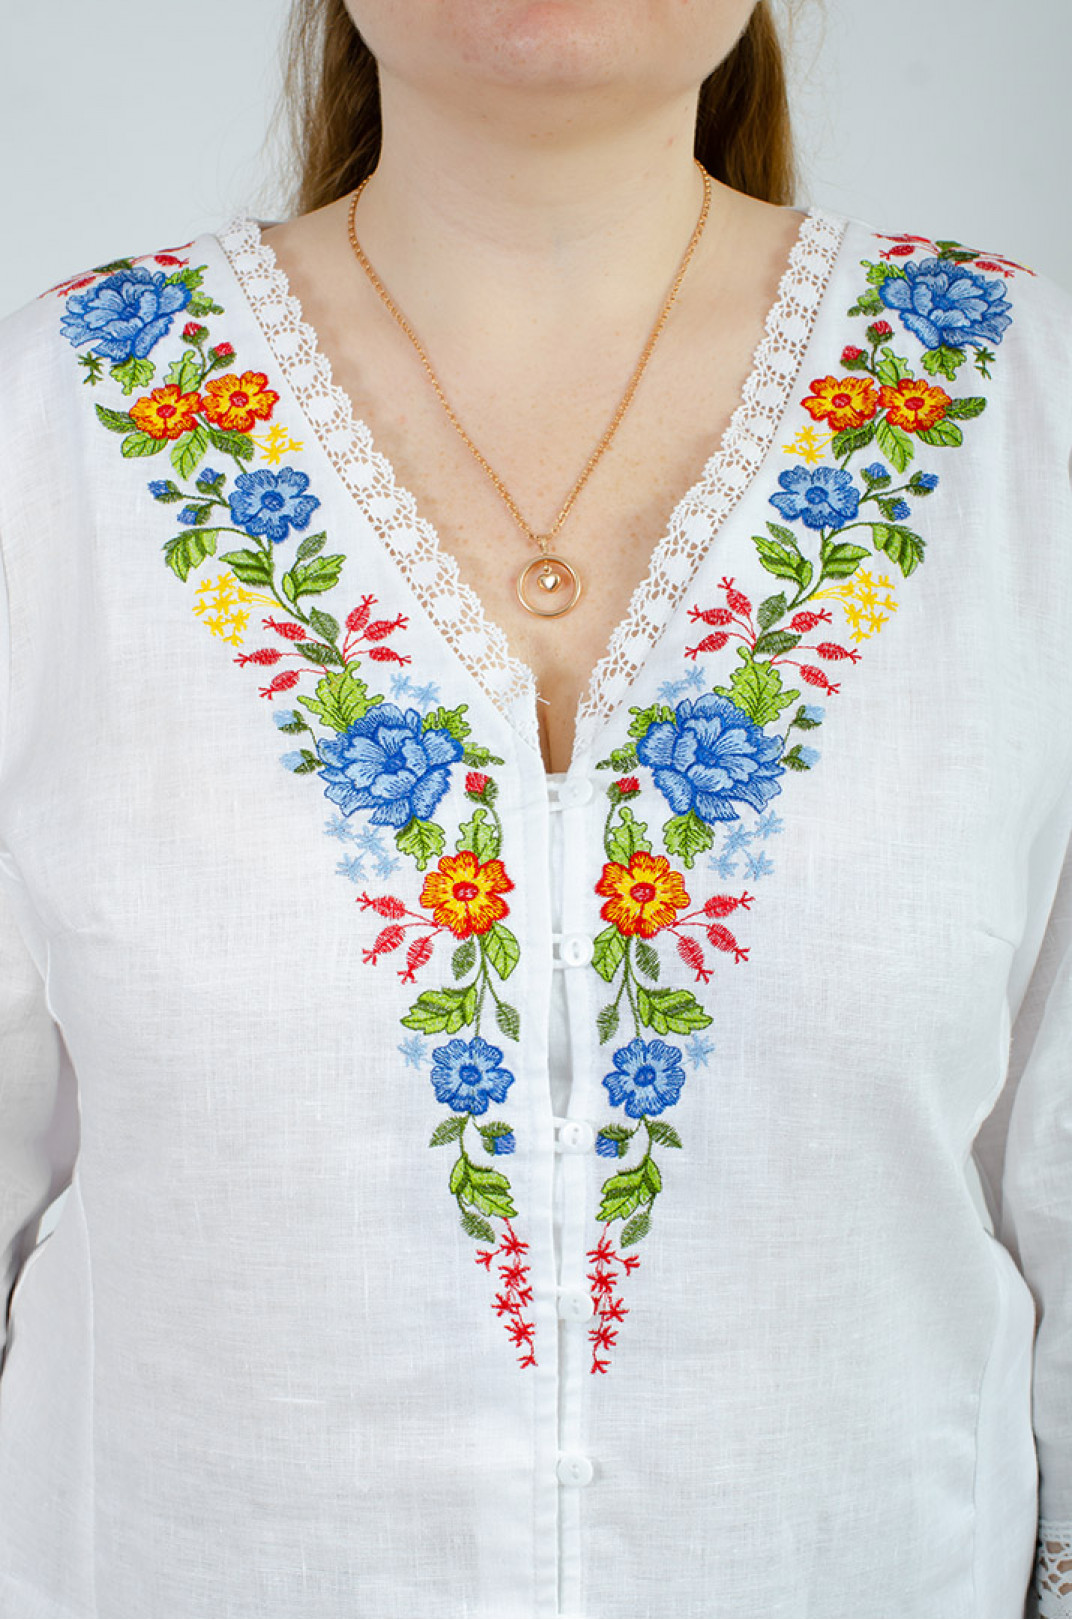 Вышиванка-блуза с кружевом больших размеров